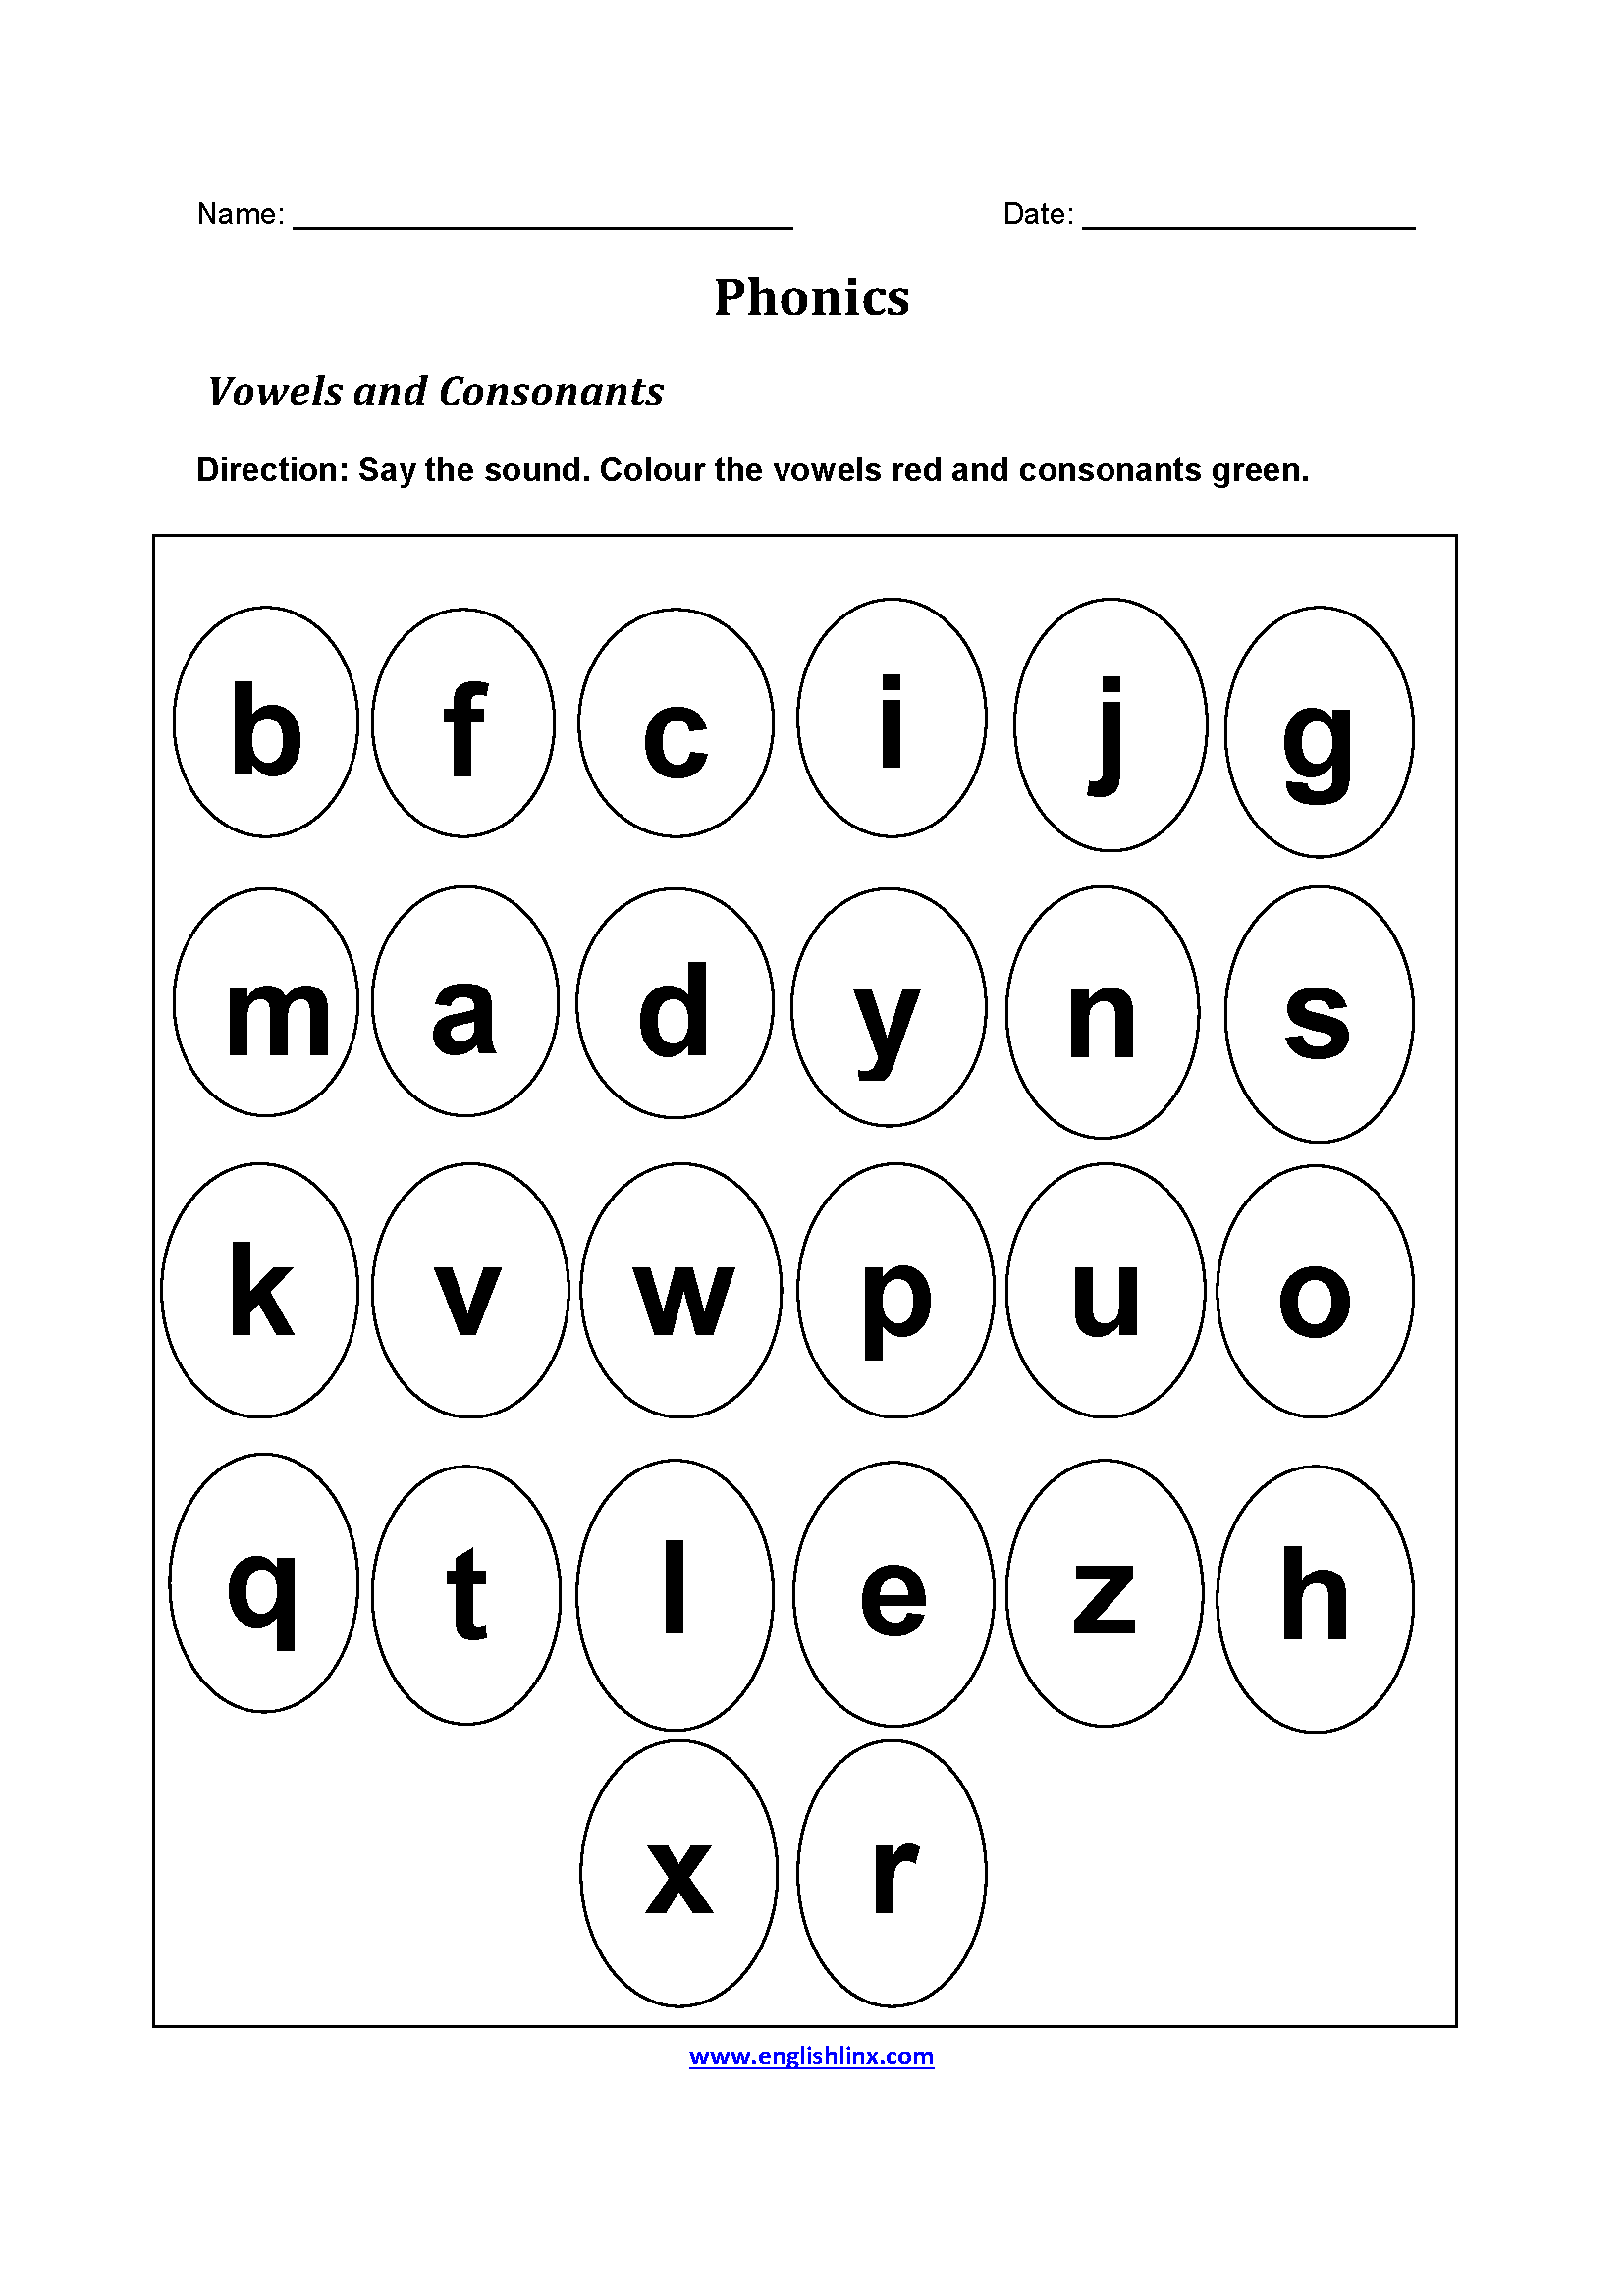 consonants-diphthongs-vowels-6